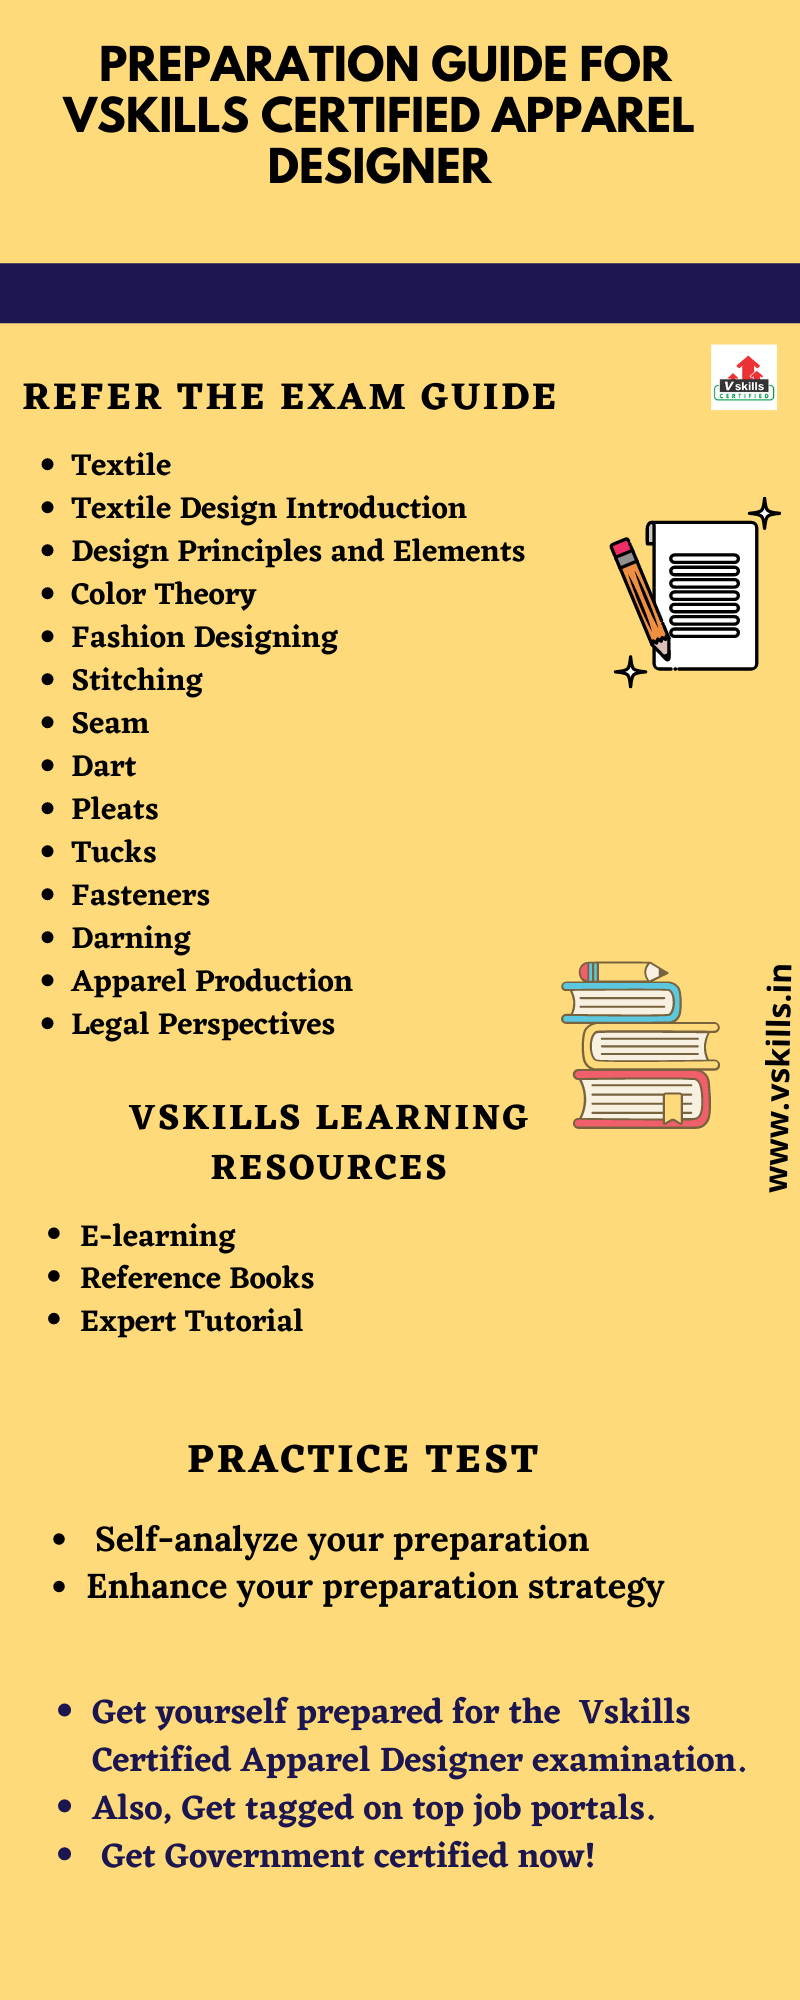 Preparation Guide for Vskills Certified Apparel Designer